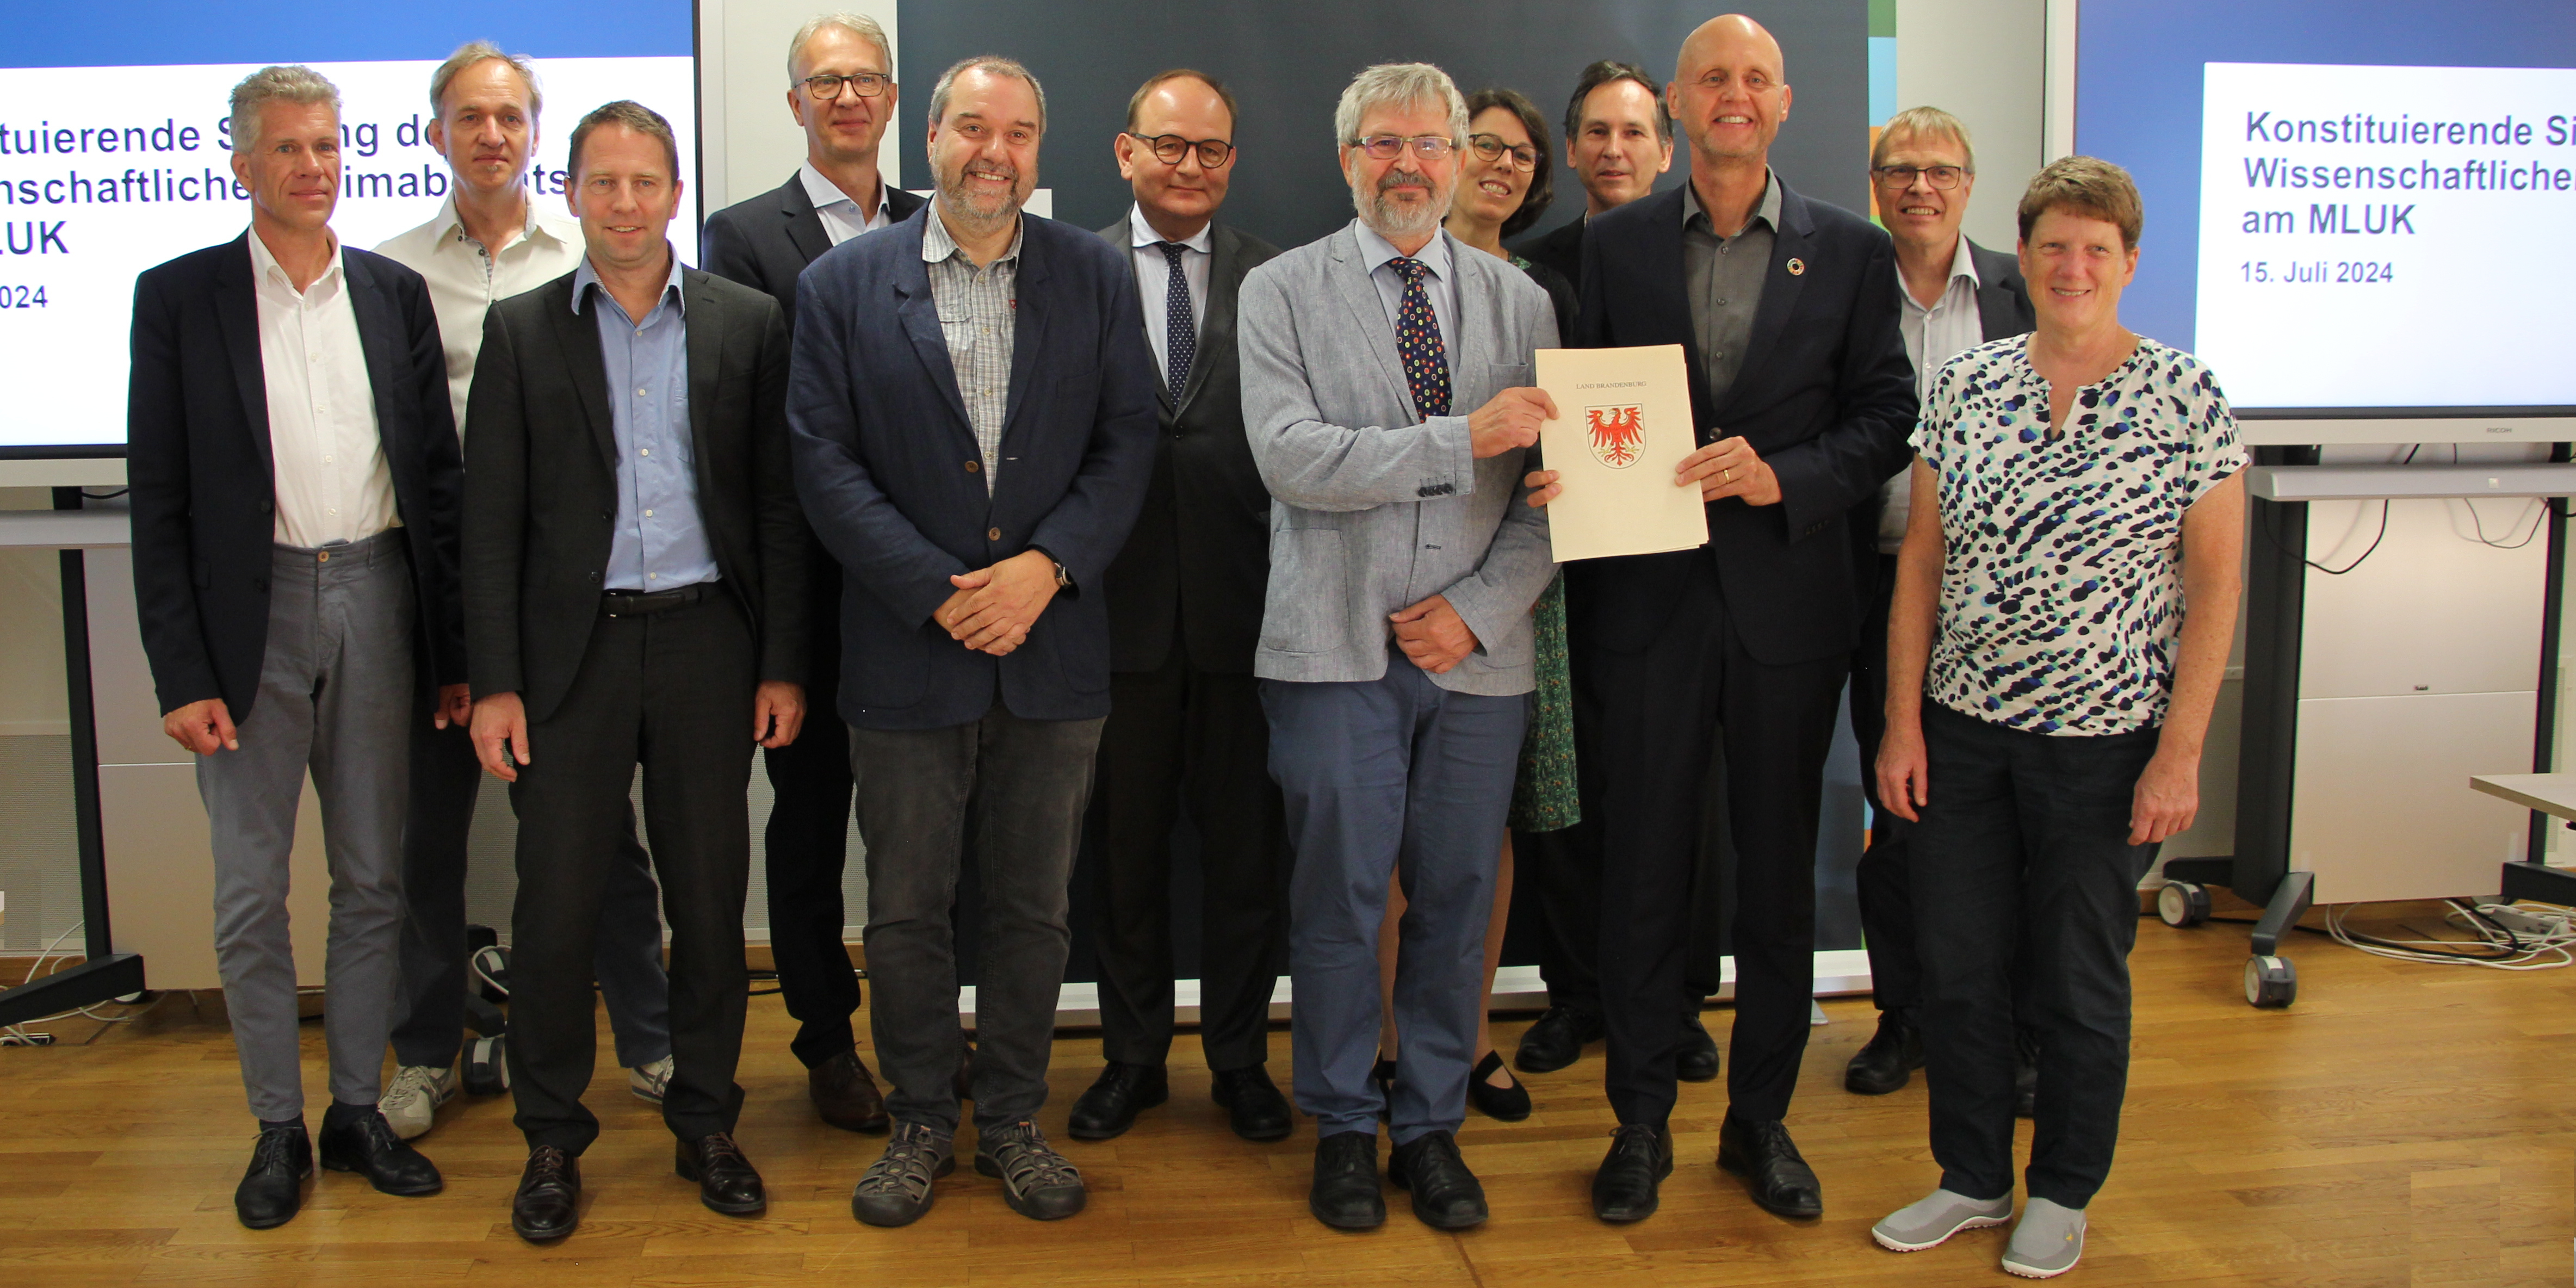 Bild: Die 12 Mitglieder des Wissenschaftlichen Klimarats Brandenburg bei der Berufung mit dem Klimaschutzminister Axel Vogel.